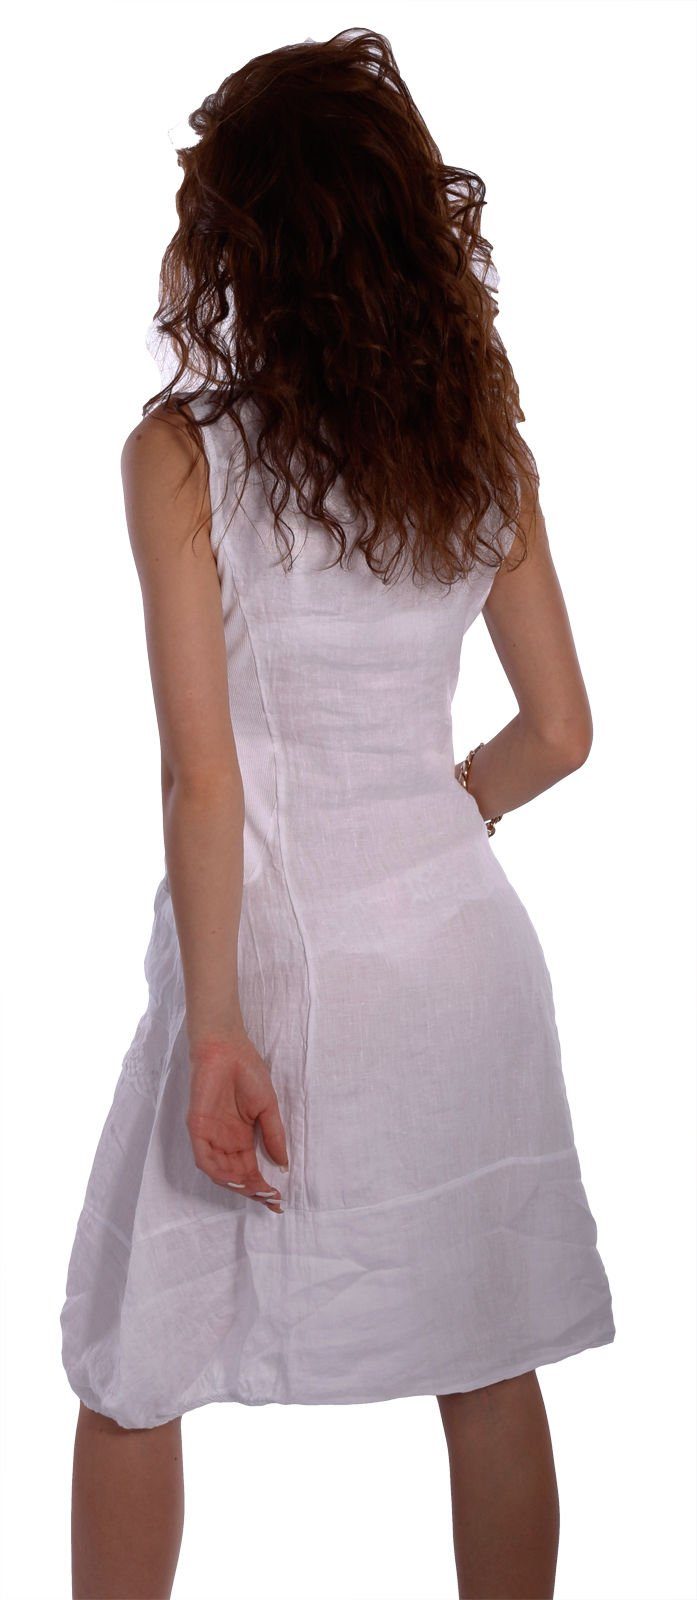 Leinen schönen Moda mit ärmellos Sommerkleid Kleid Charis Details Weiß